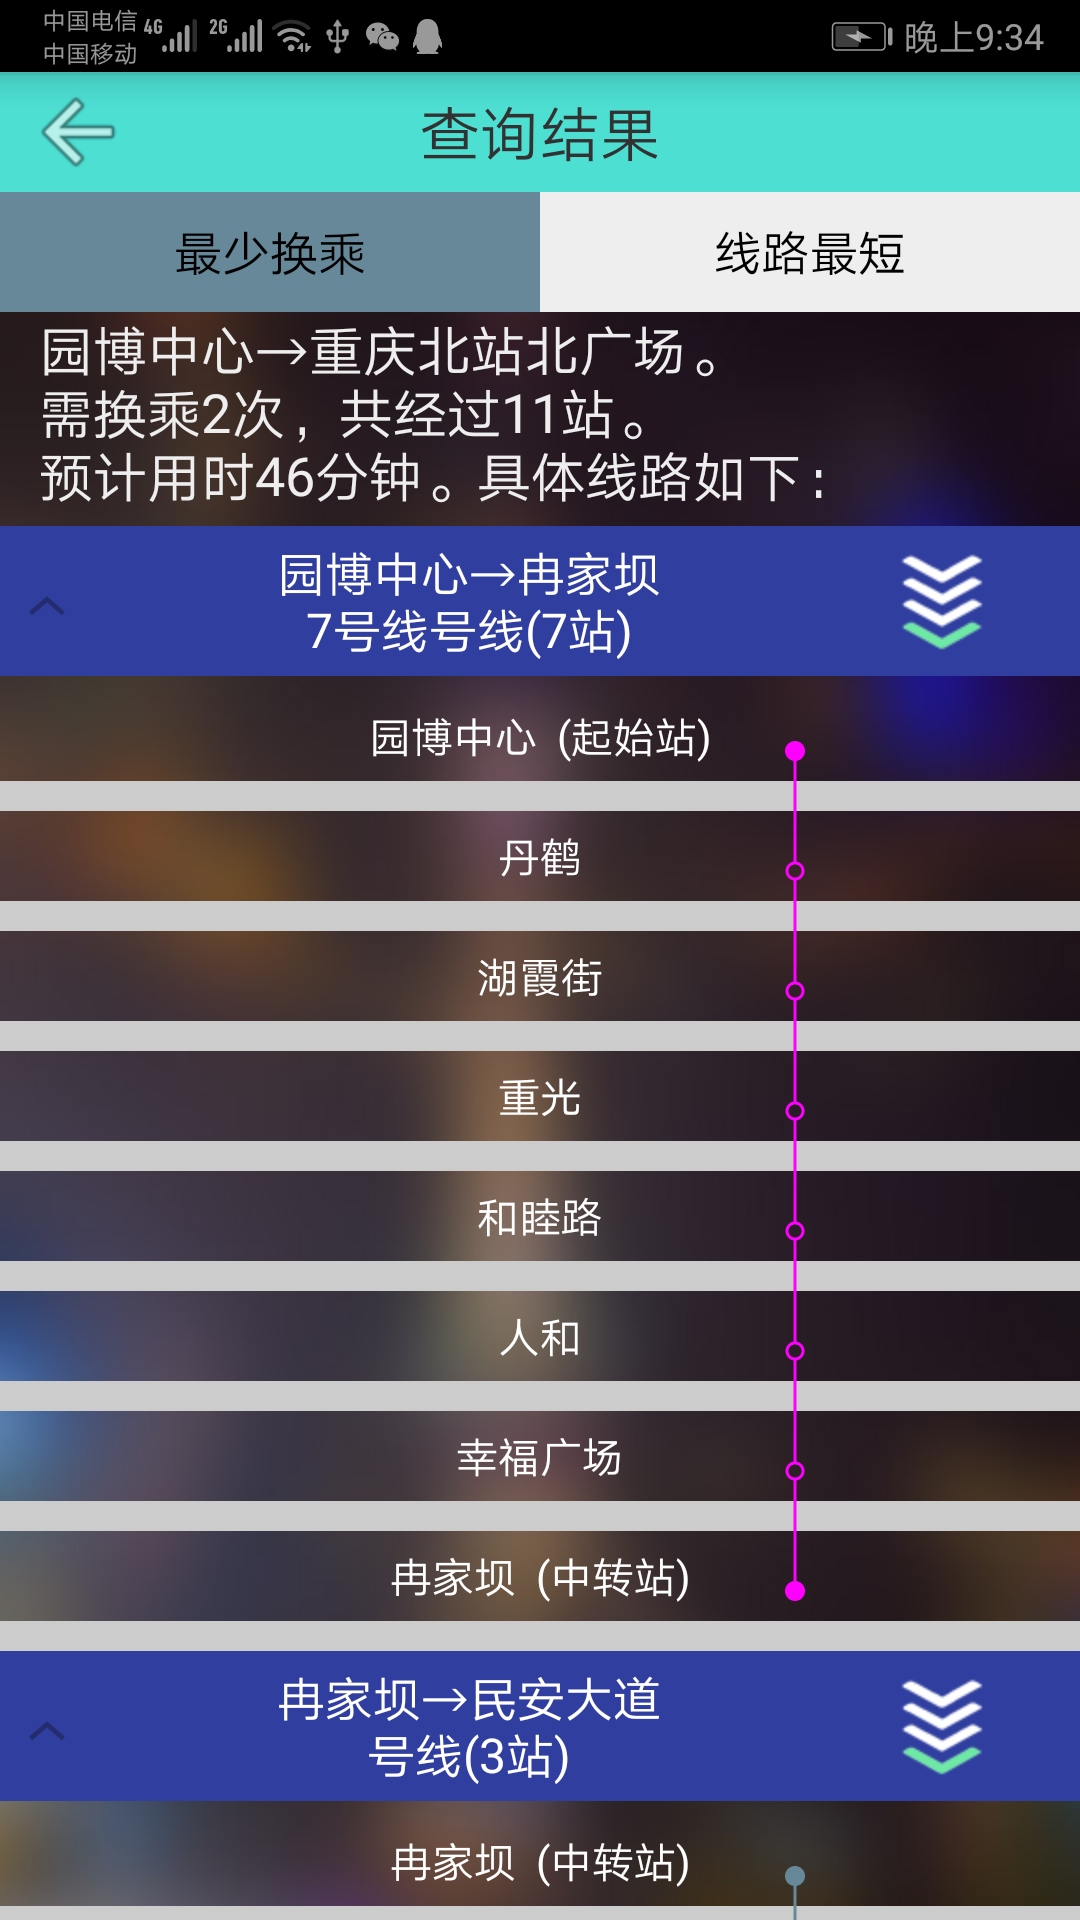 重庆地铁查询v1.2截图5